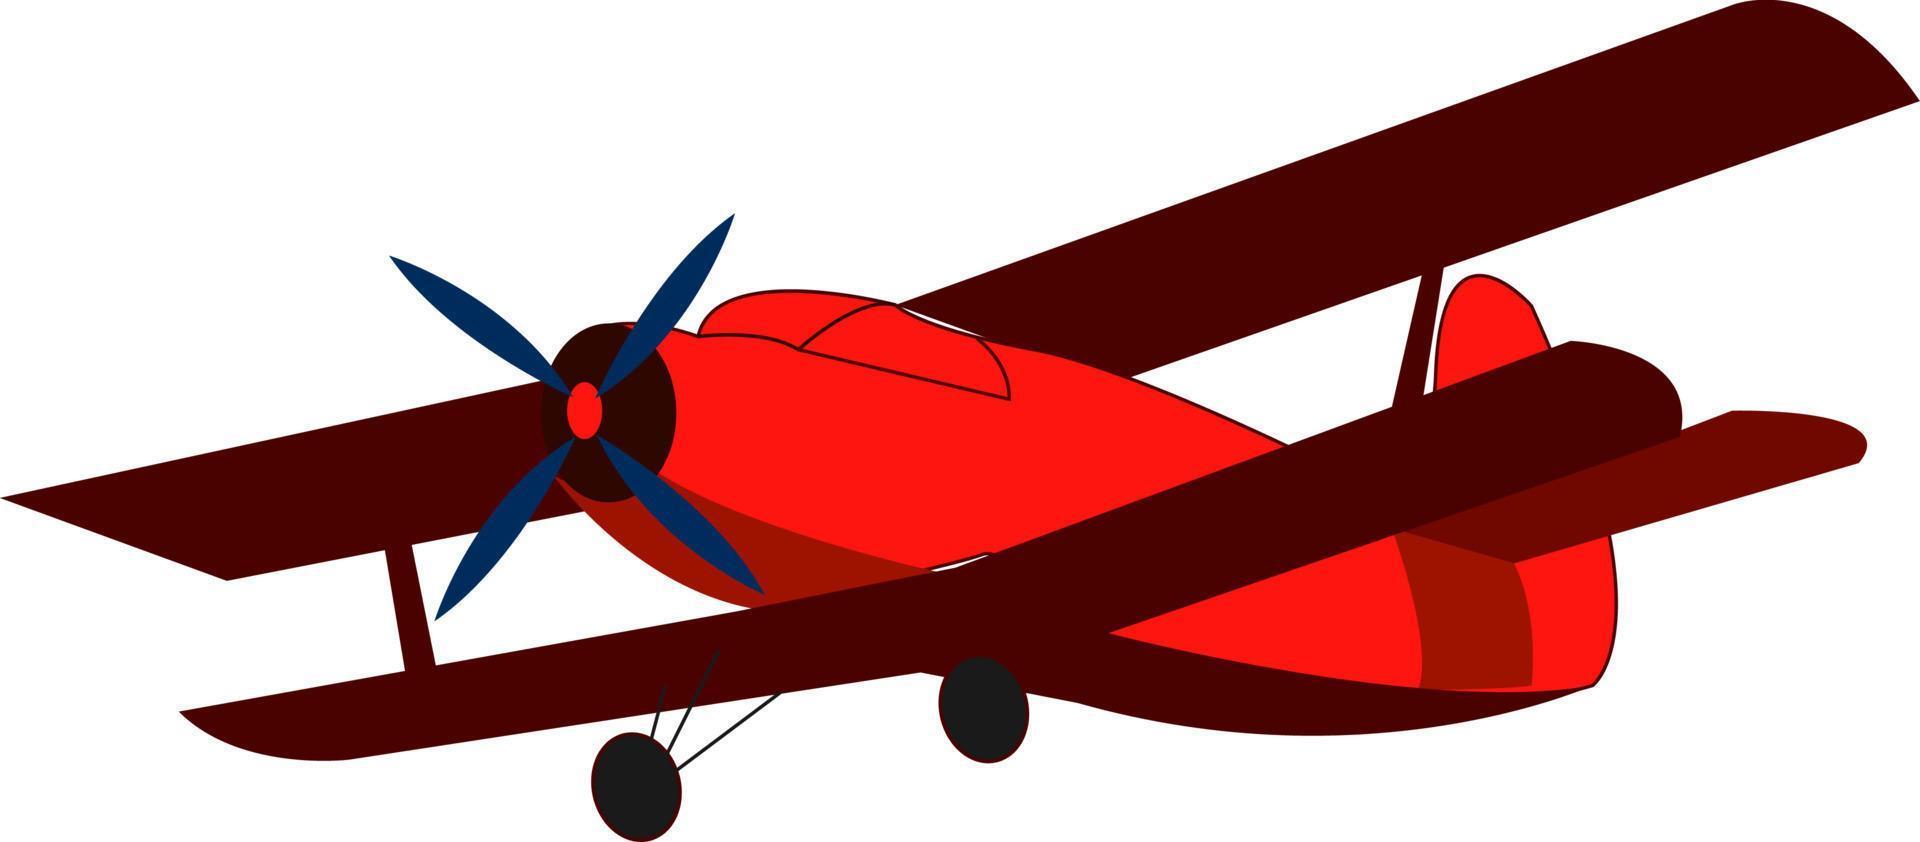 Avión retro rojo, ilustración, vector sobre fondo blanco.